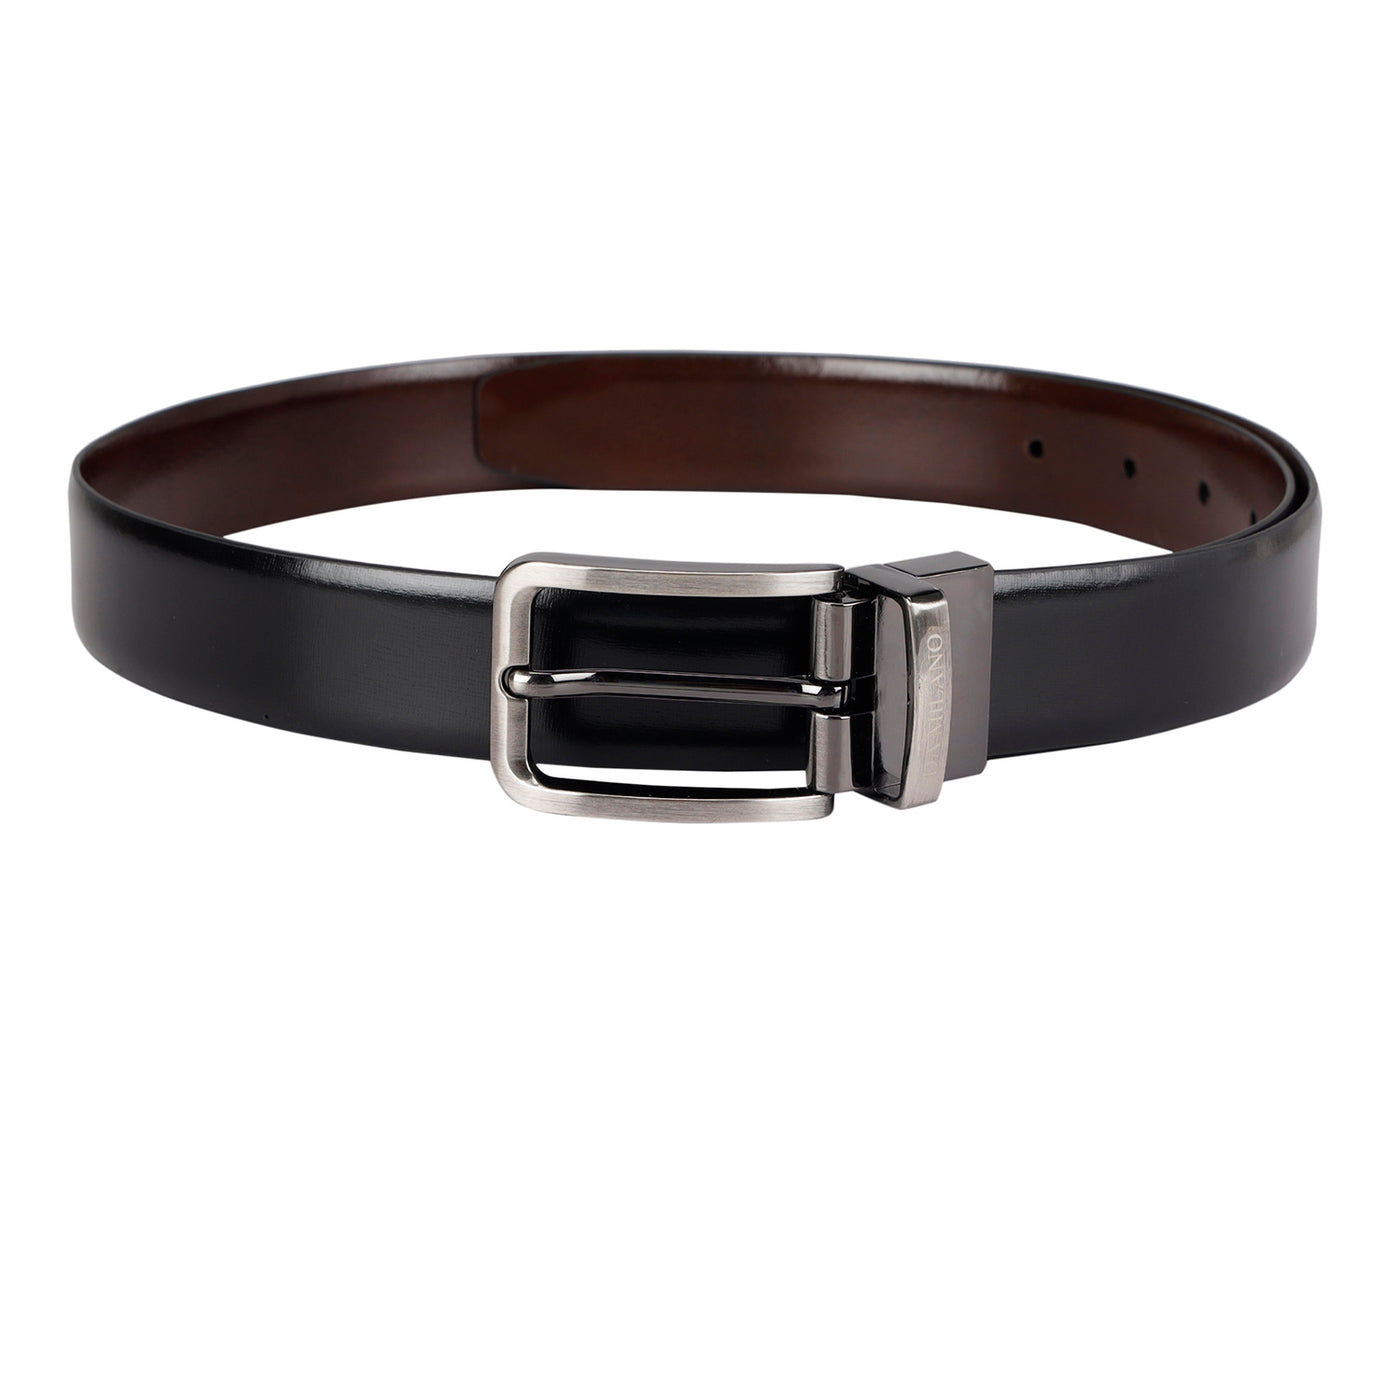 Formal Plain Leather Mens Belt- Black & Brown